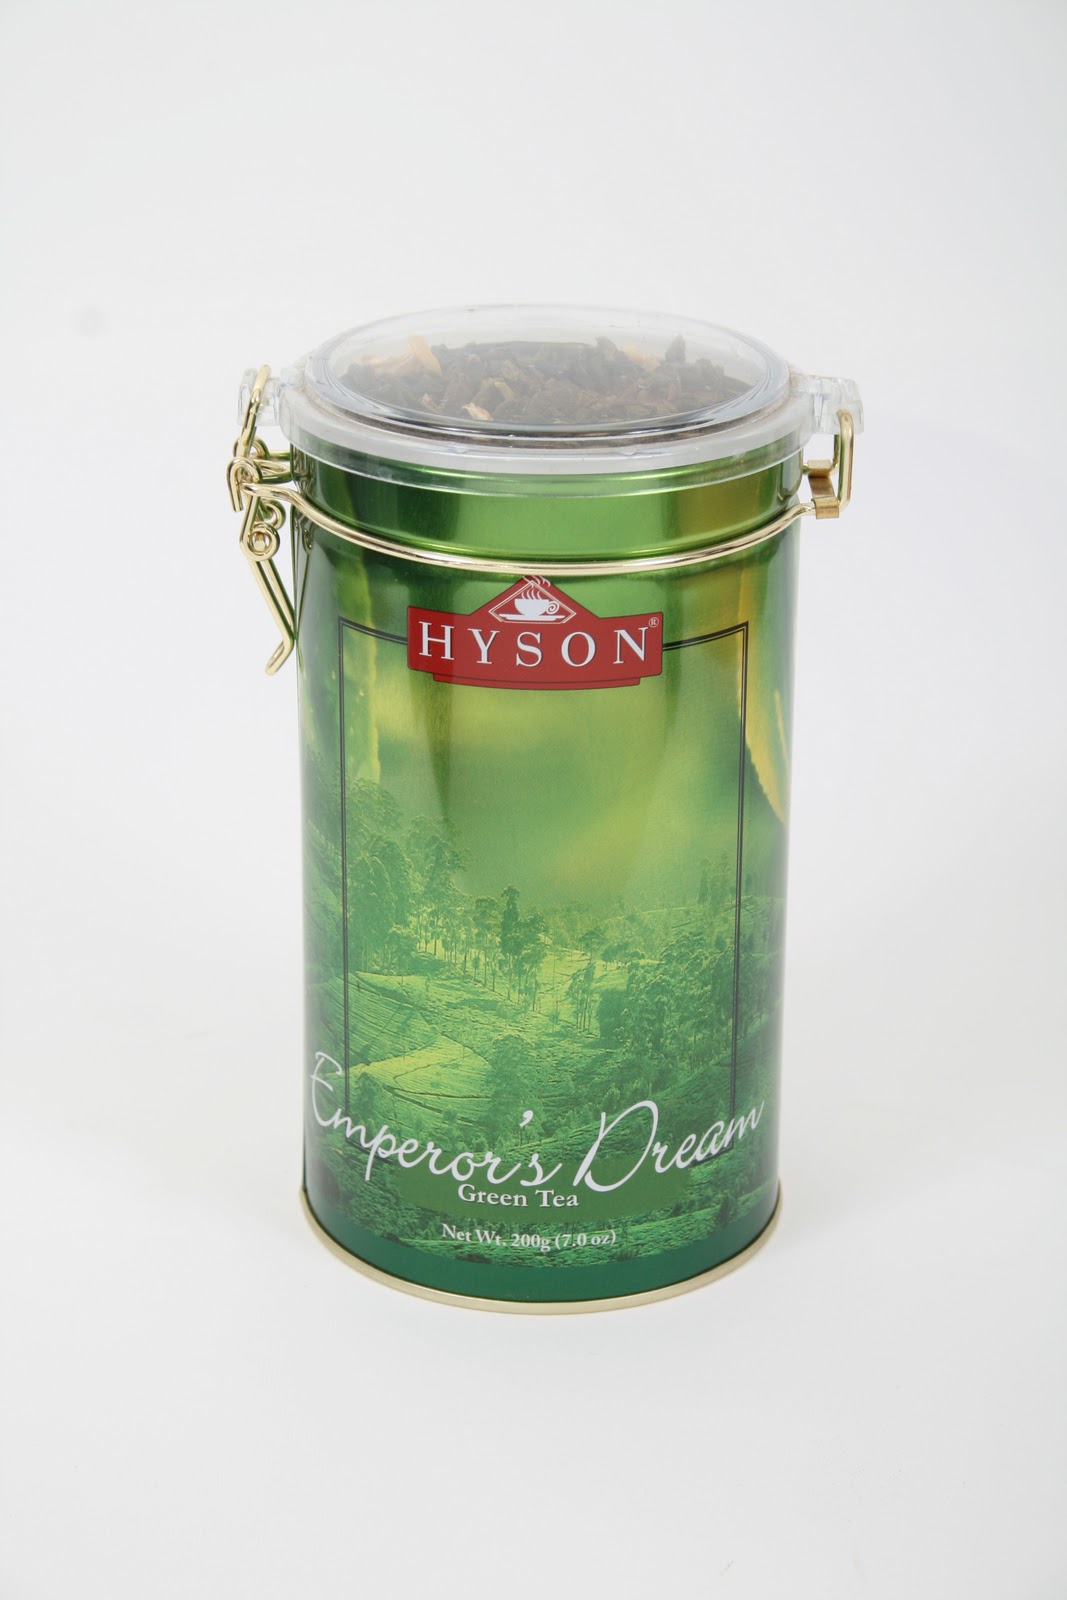 HYSON TEA TIN COLLECTION Details about   CEYLON Hyson EXQUISITE Leaf Tea regional range